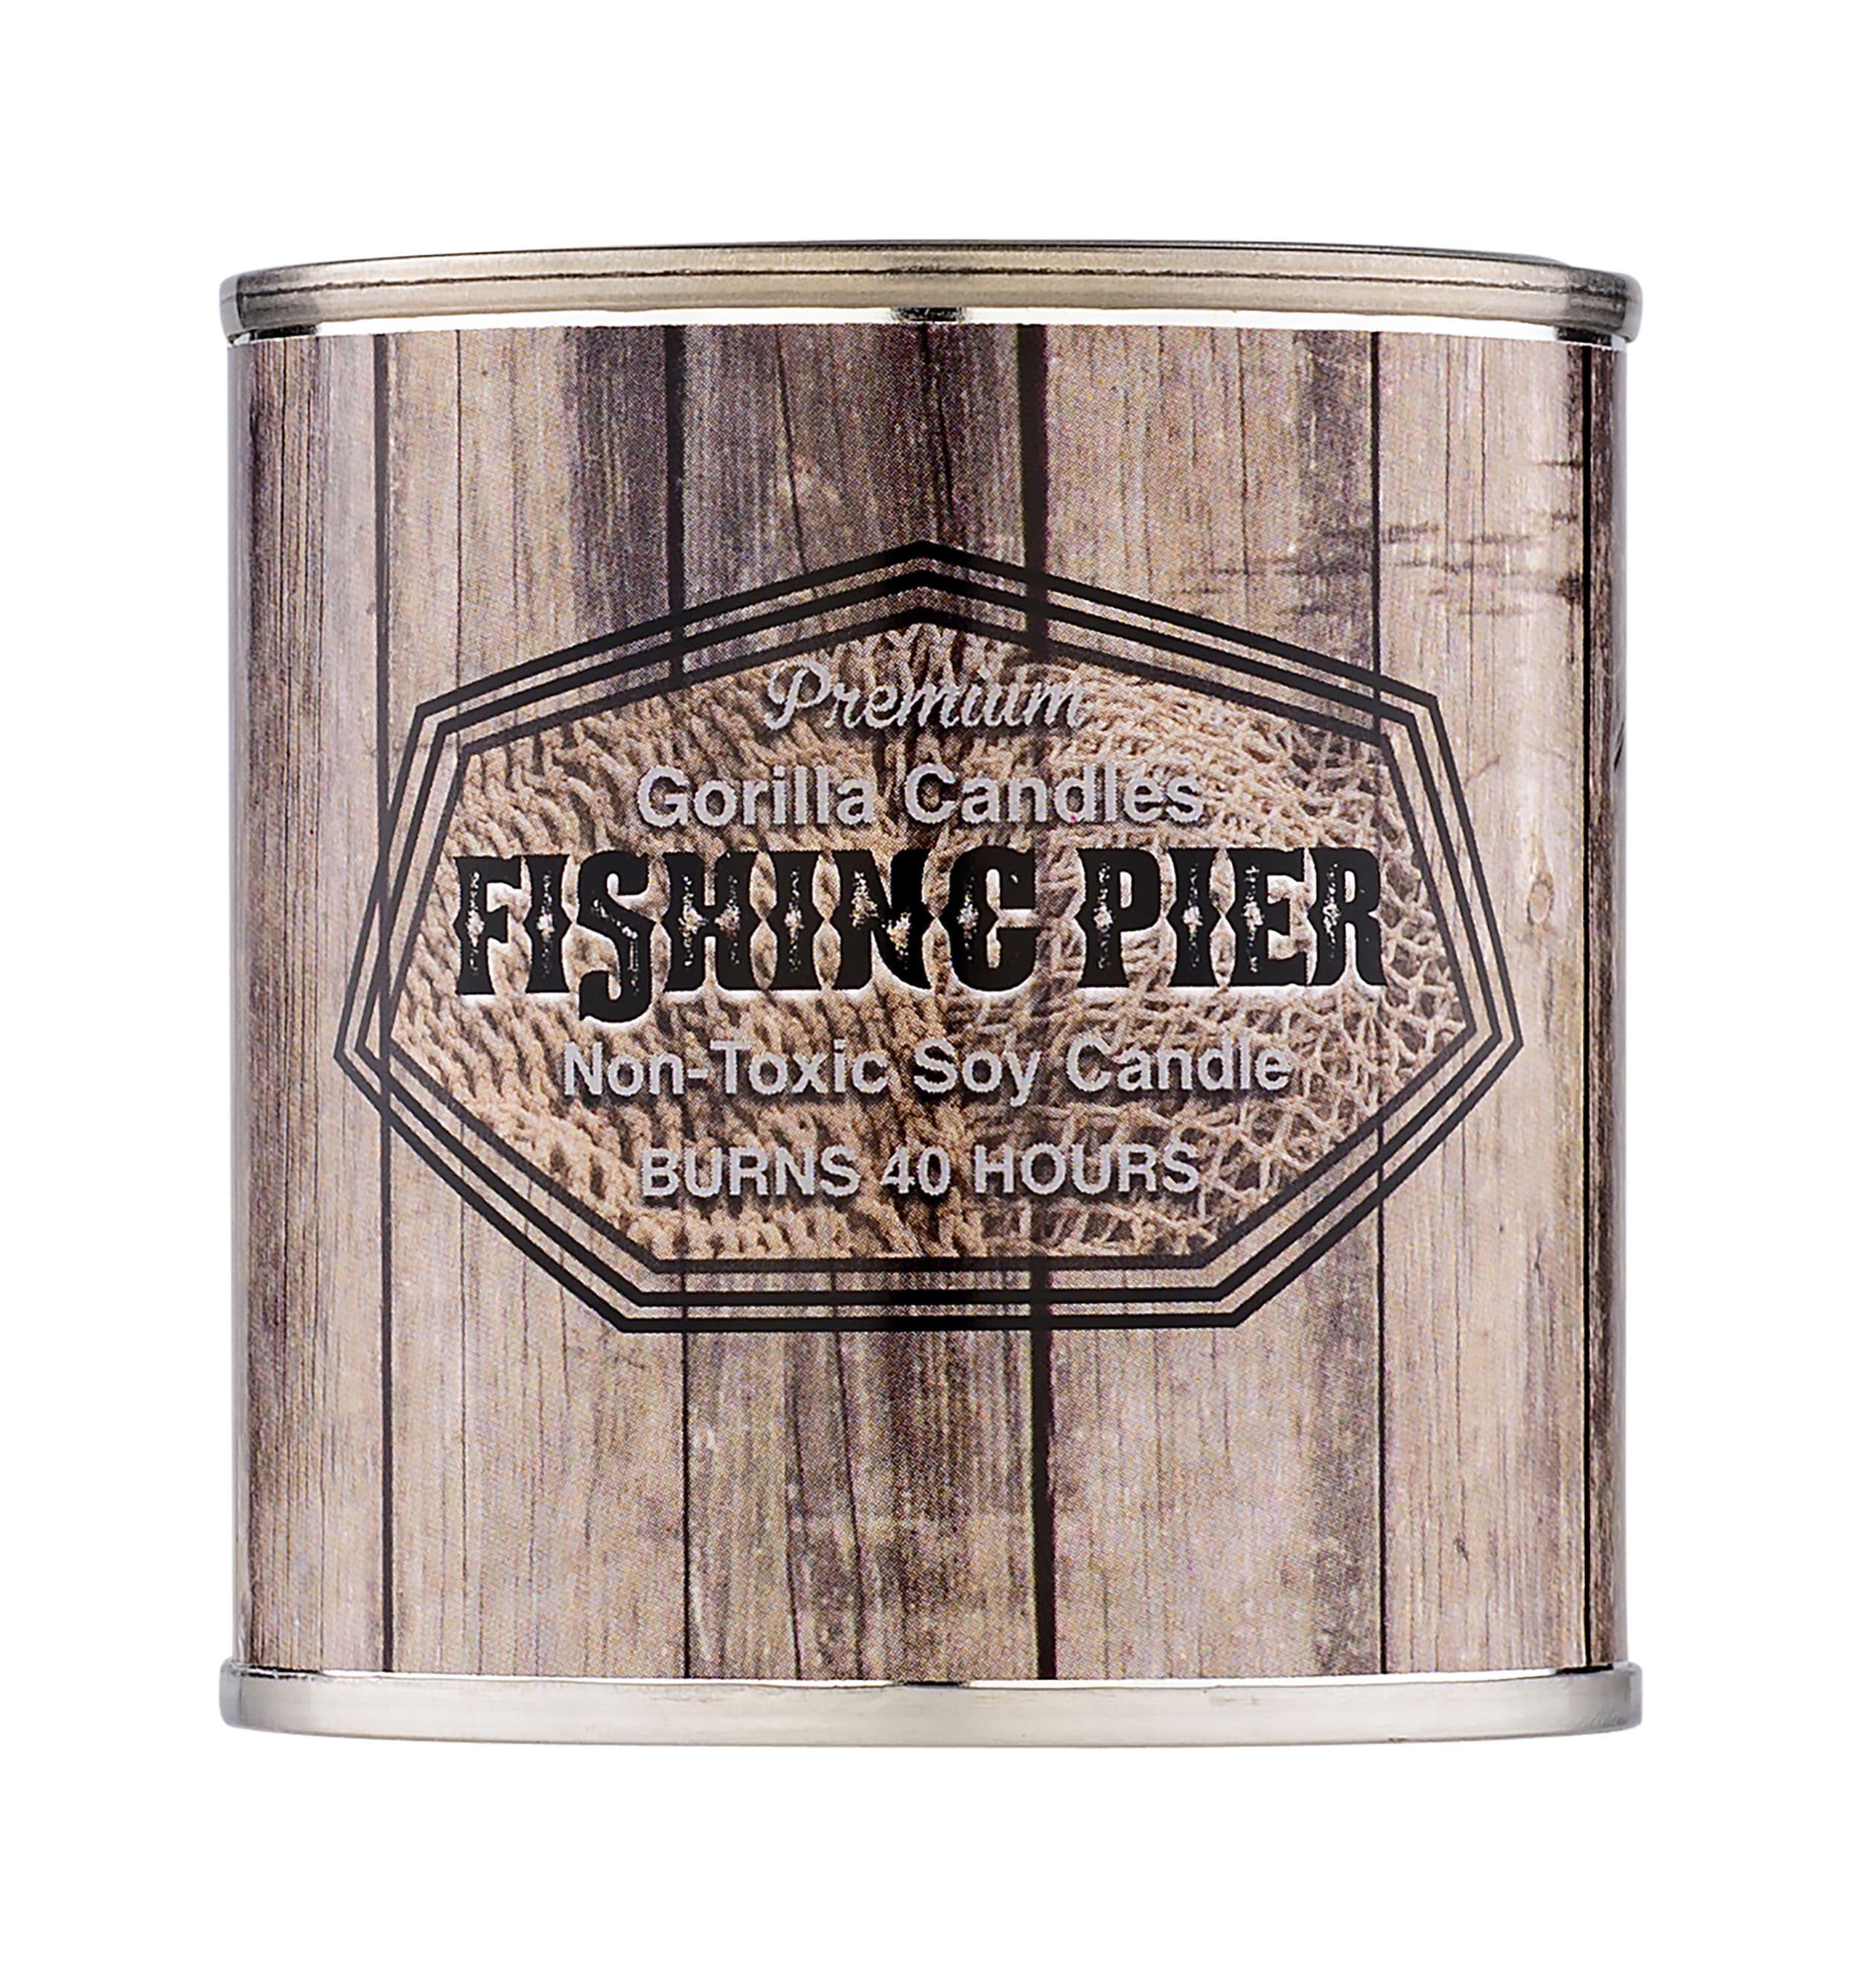 Fishing Pier Fragrance Oil